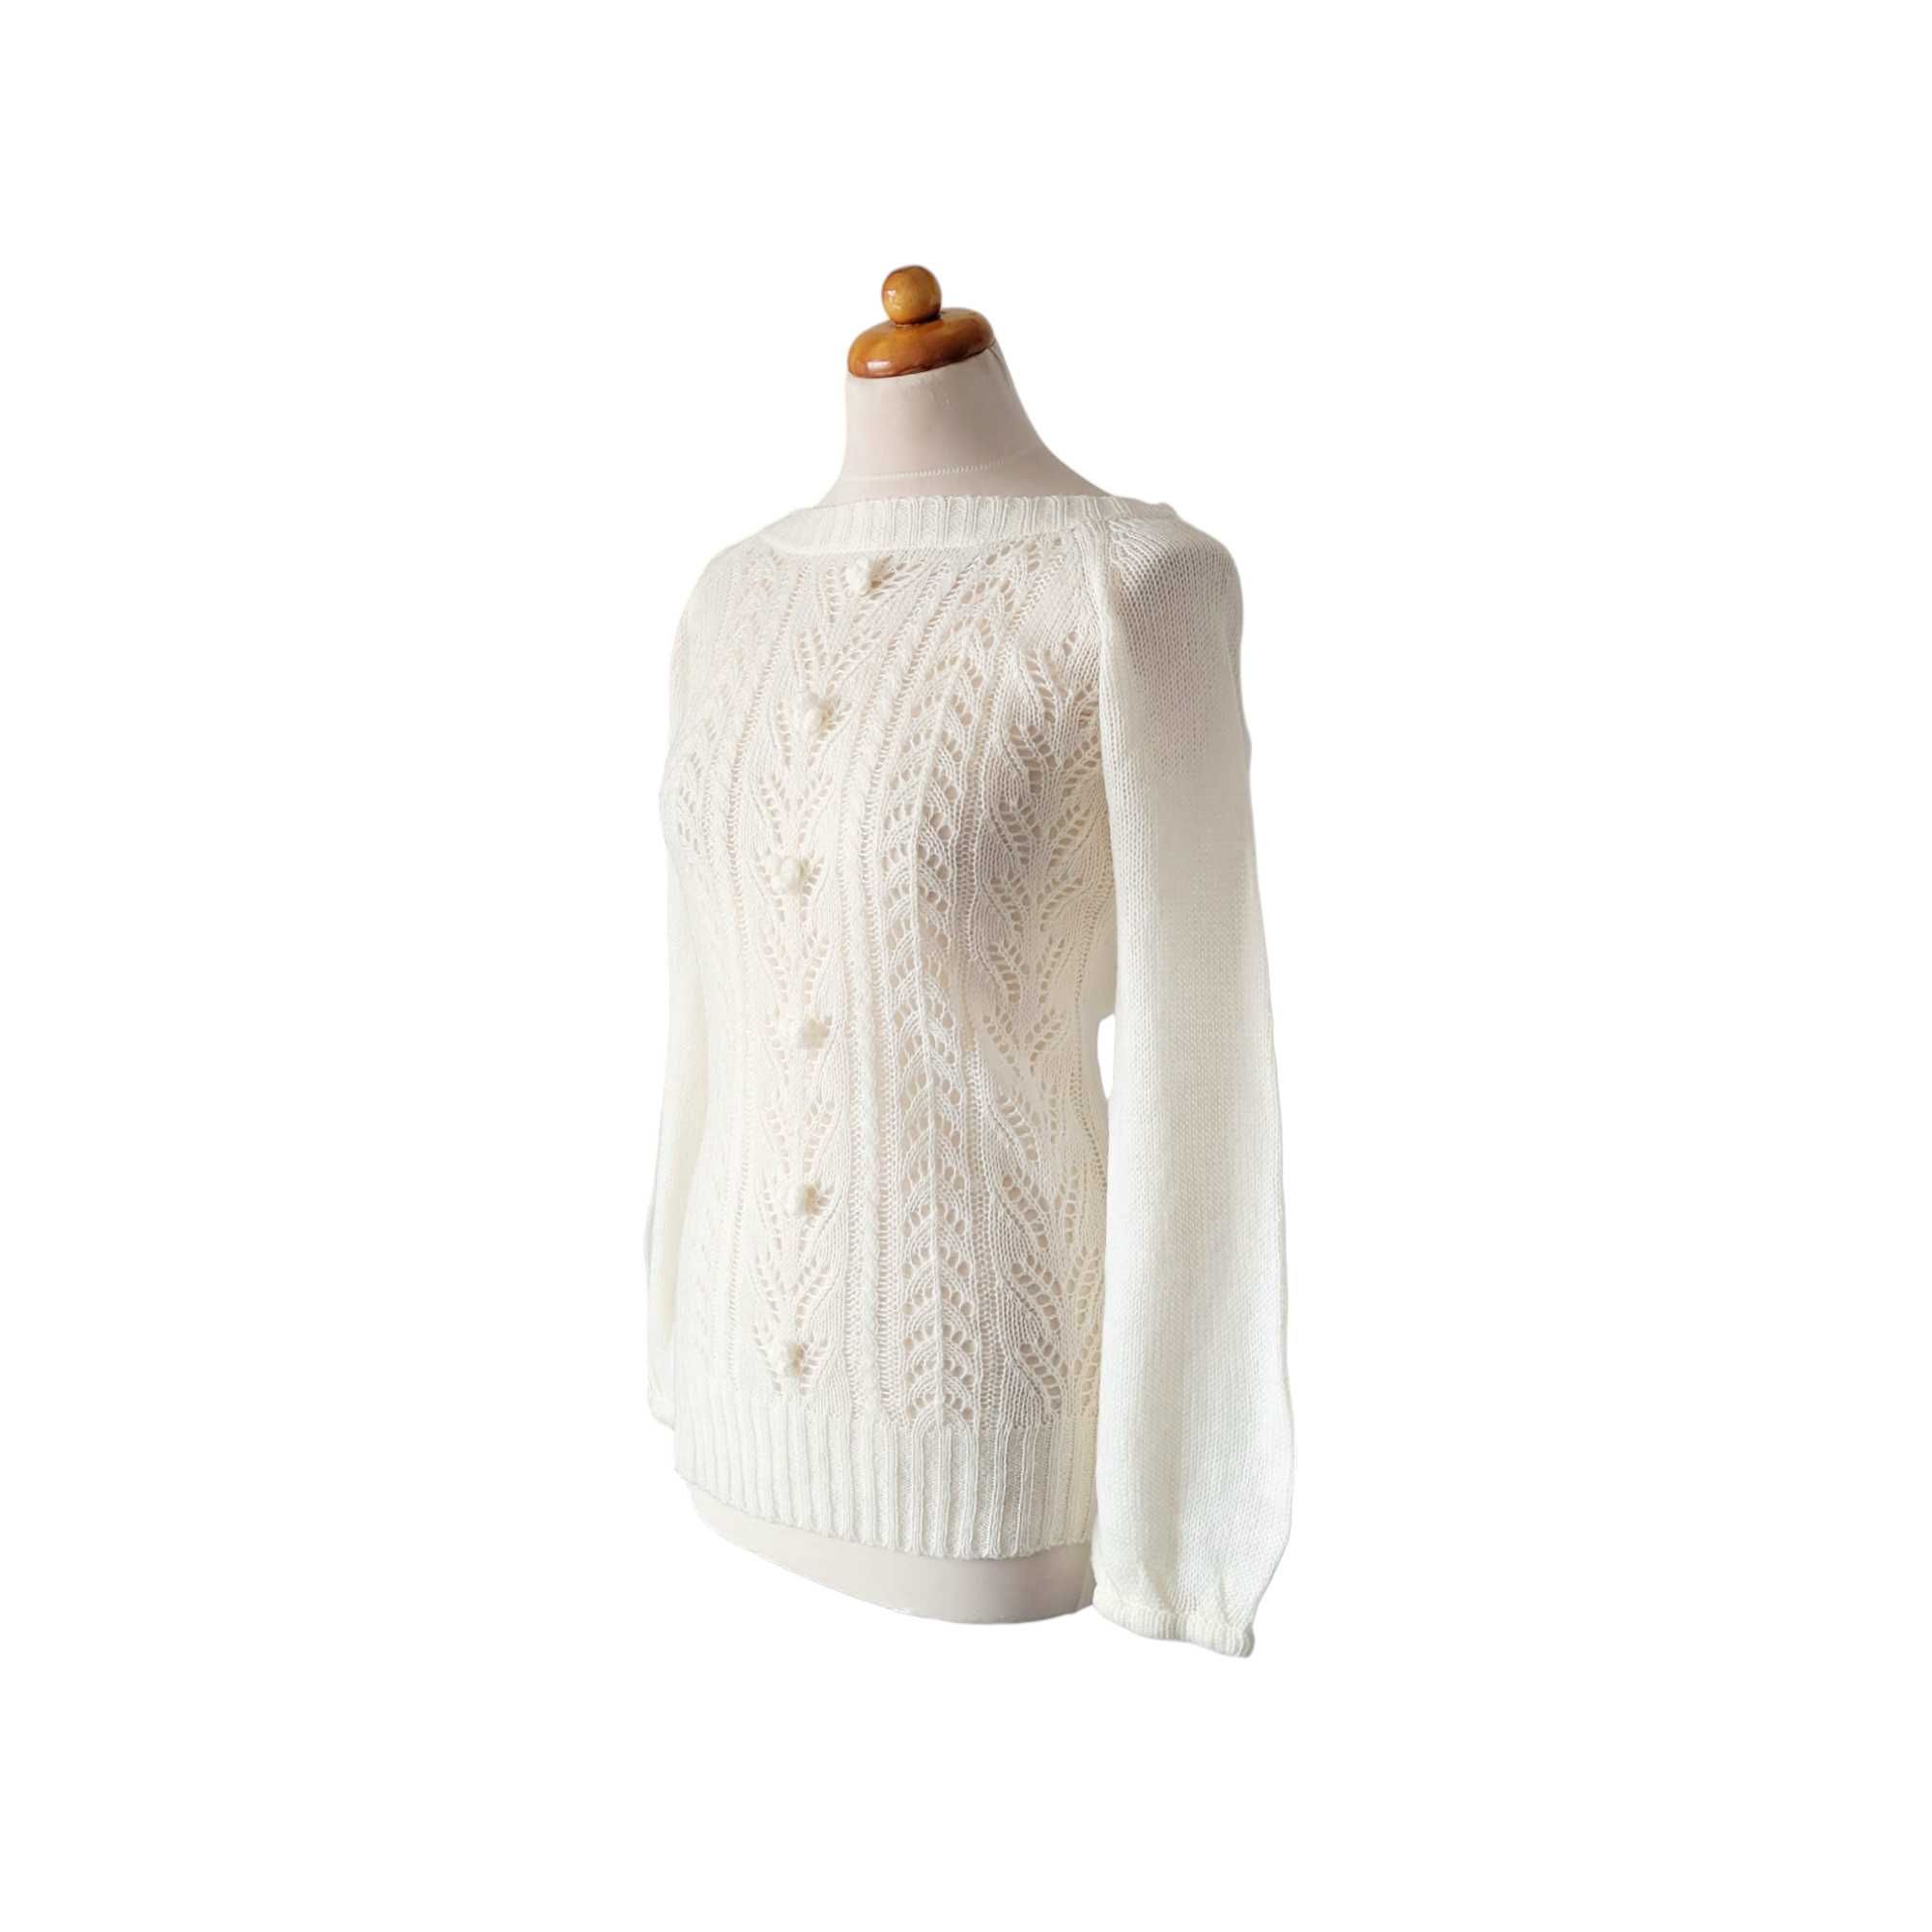 Kremowy ażurowy sweter damski vintage S M plecionki rozszerzane rękawy